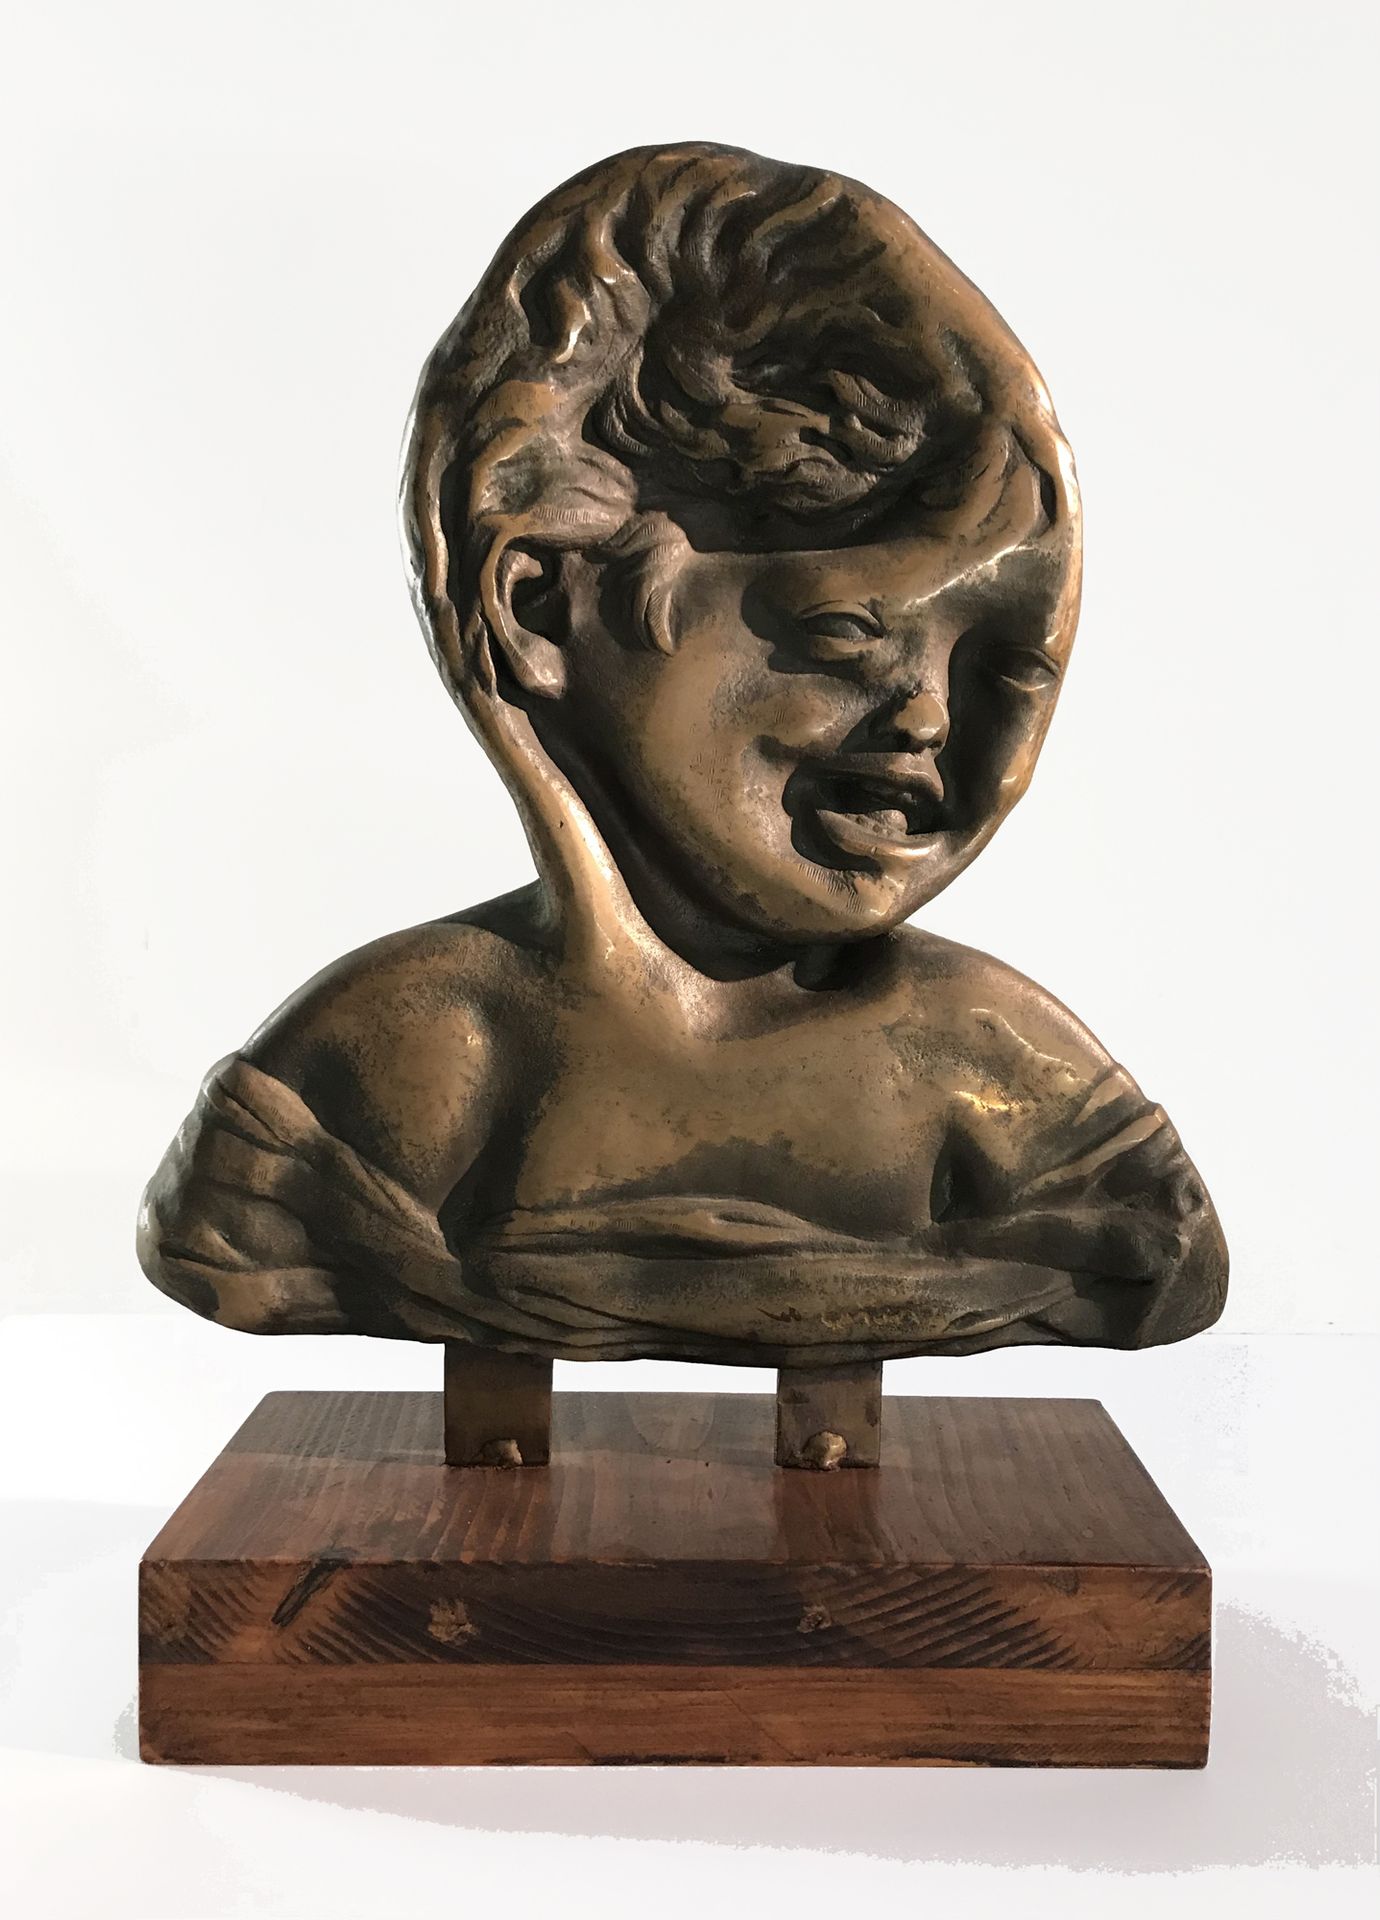 César (1921-1998) Der Lachende von Donatello komprimiert, 1971
Original Bronze
S&hellip;